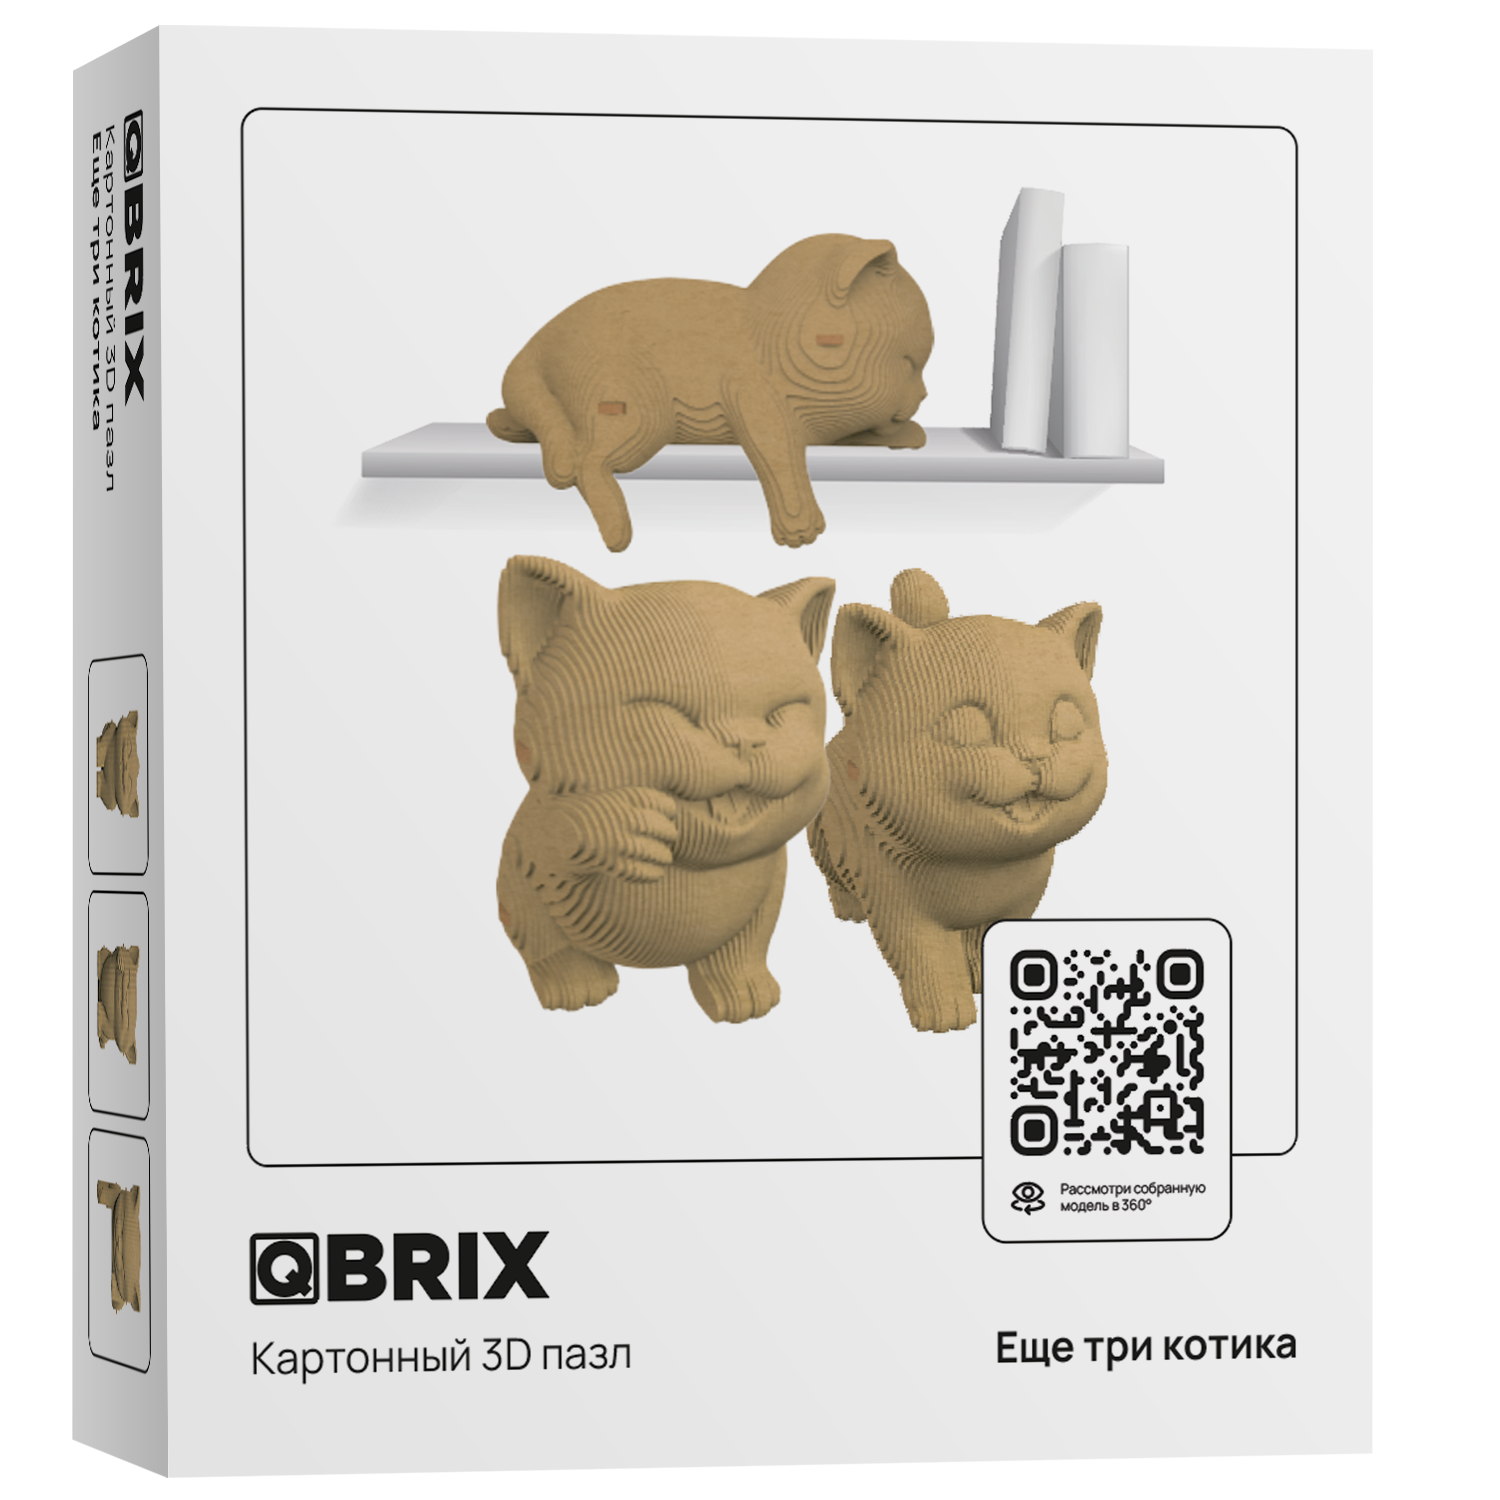 Конструктор QBRIX 3D картонный Еще три котика 20030 20030 - фото 9